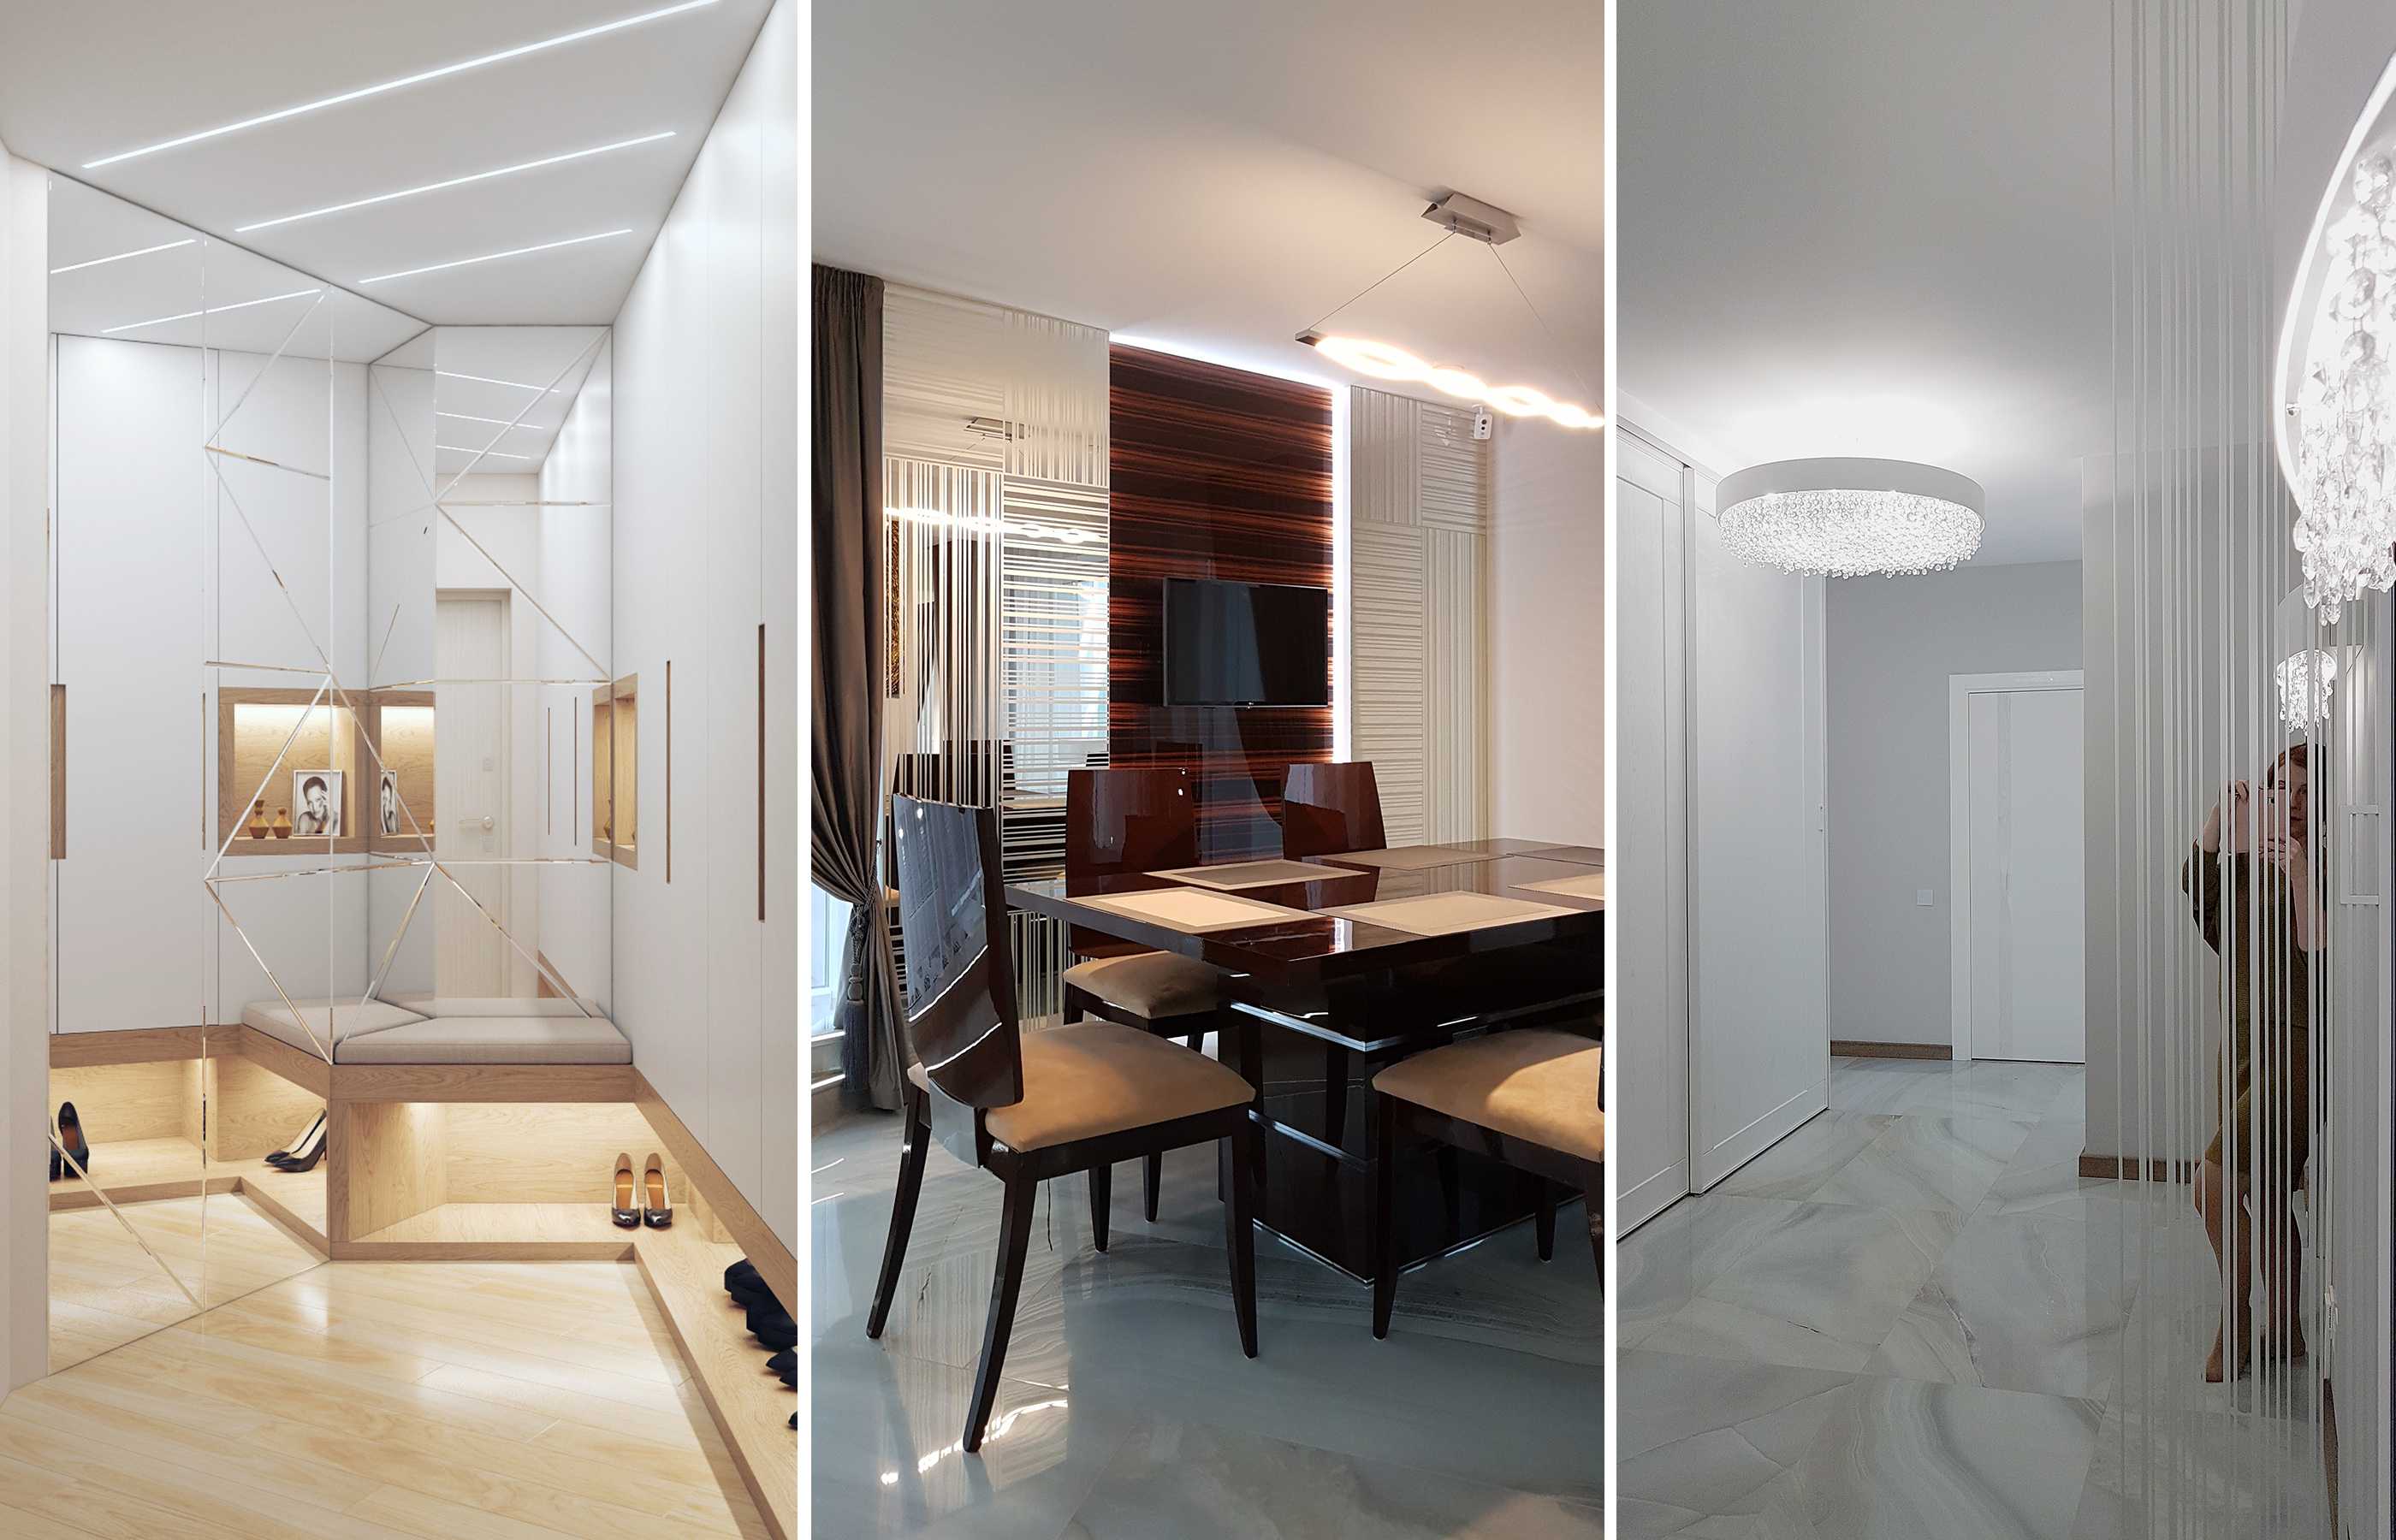 Дизайн спальни с балконом — обзор идей по совмещению интерьера. топ-100 фото новинок дизайна совмещенной спальни